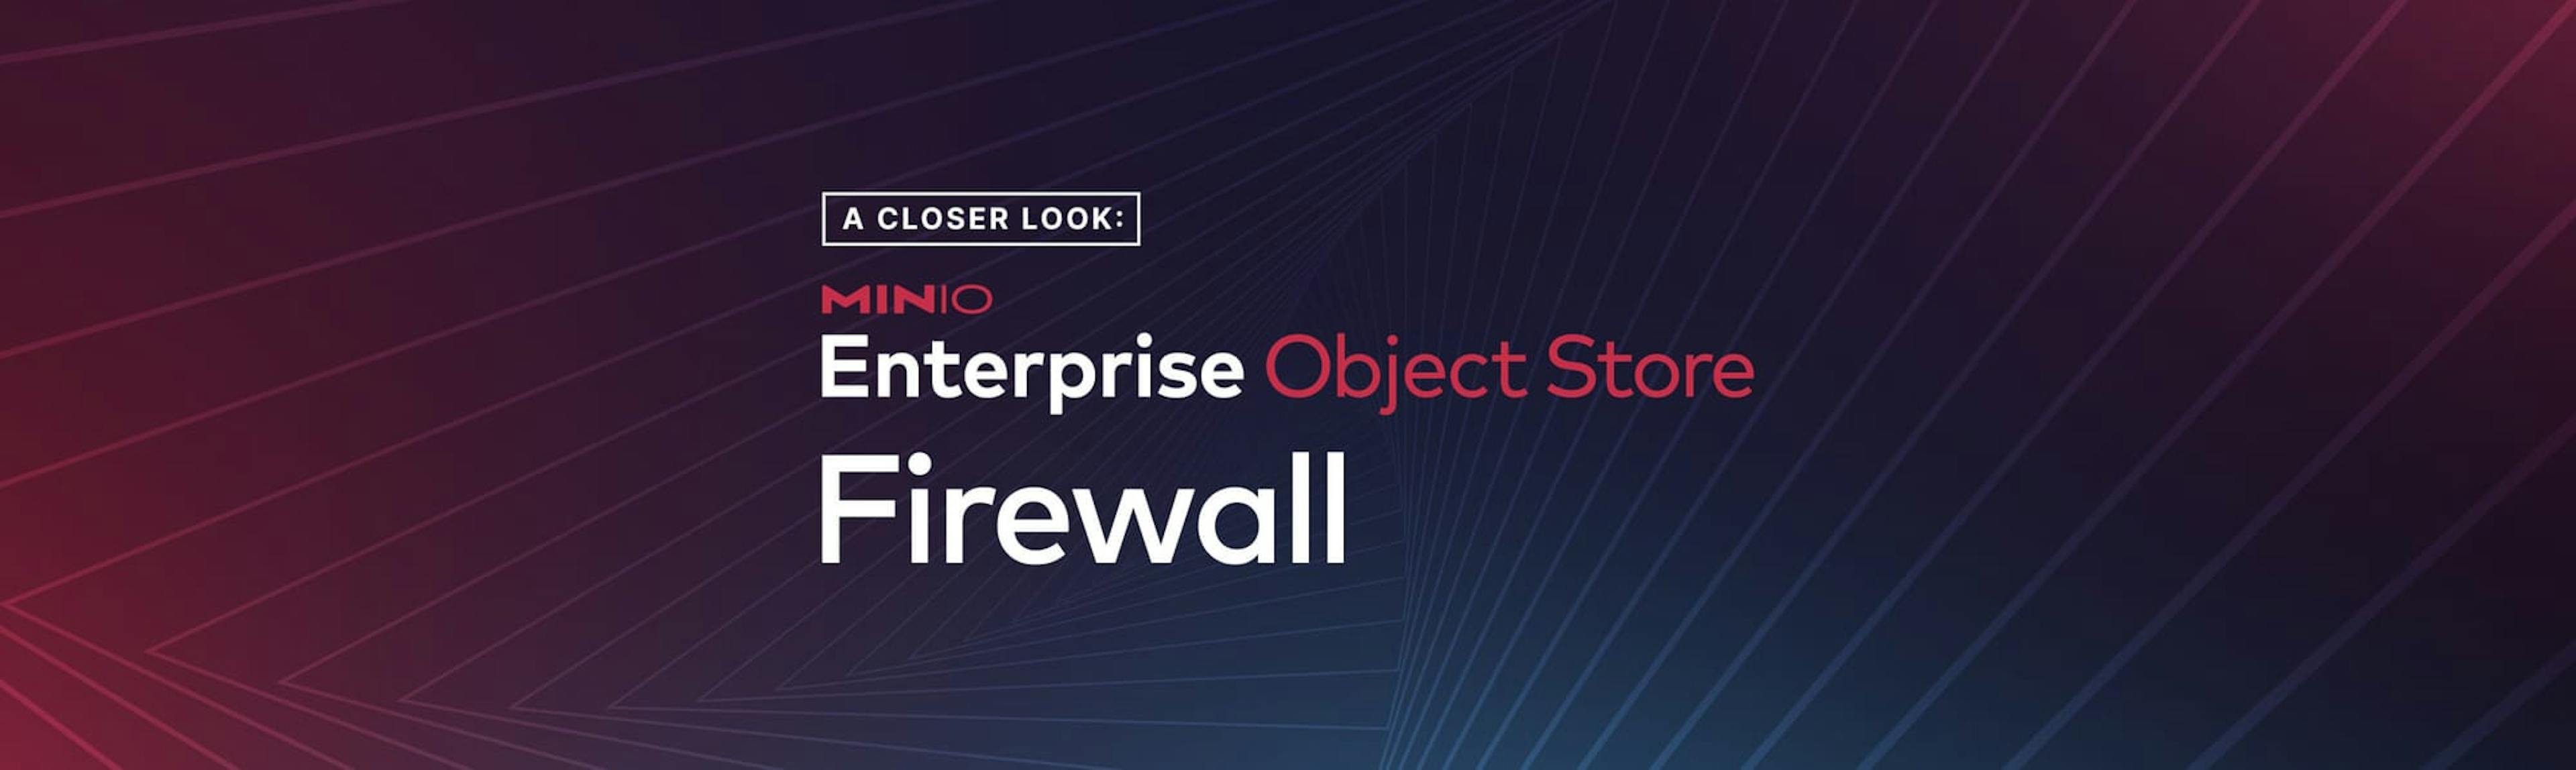 featured image - Ein genauerer Blick auf die MinIO Enterprise Object Store Firewall